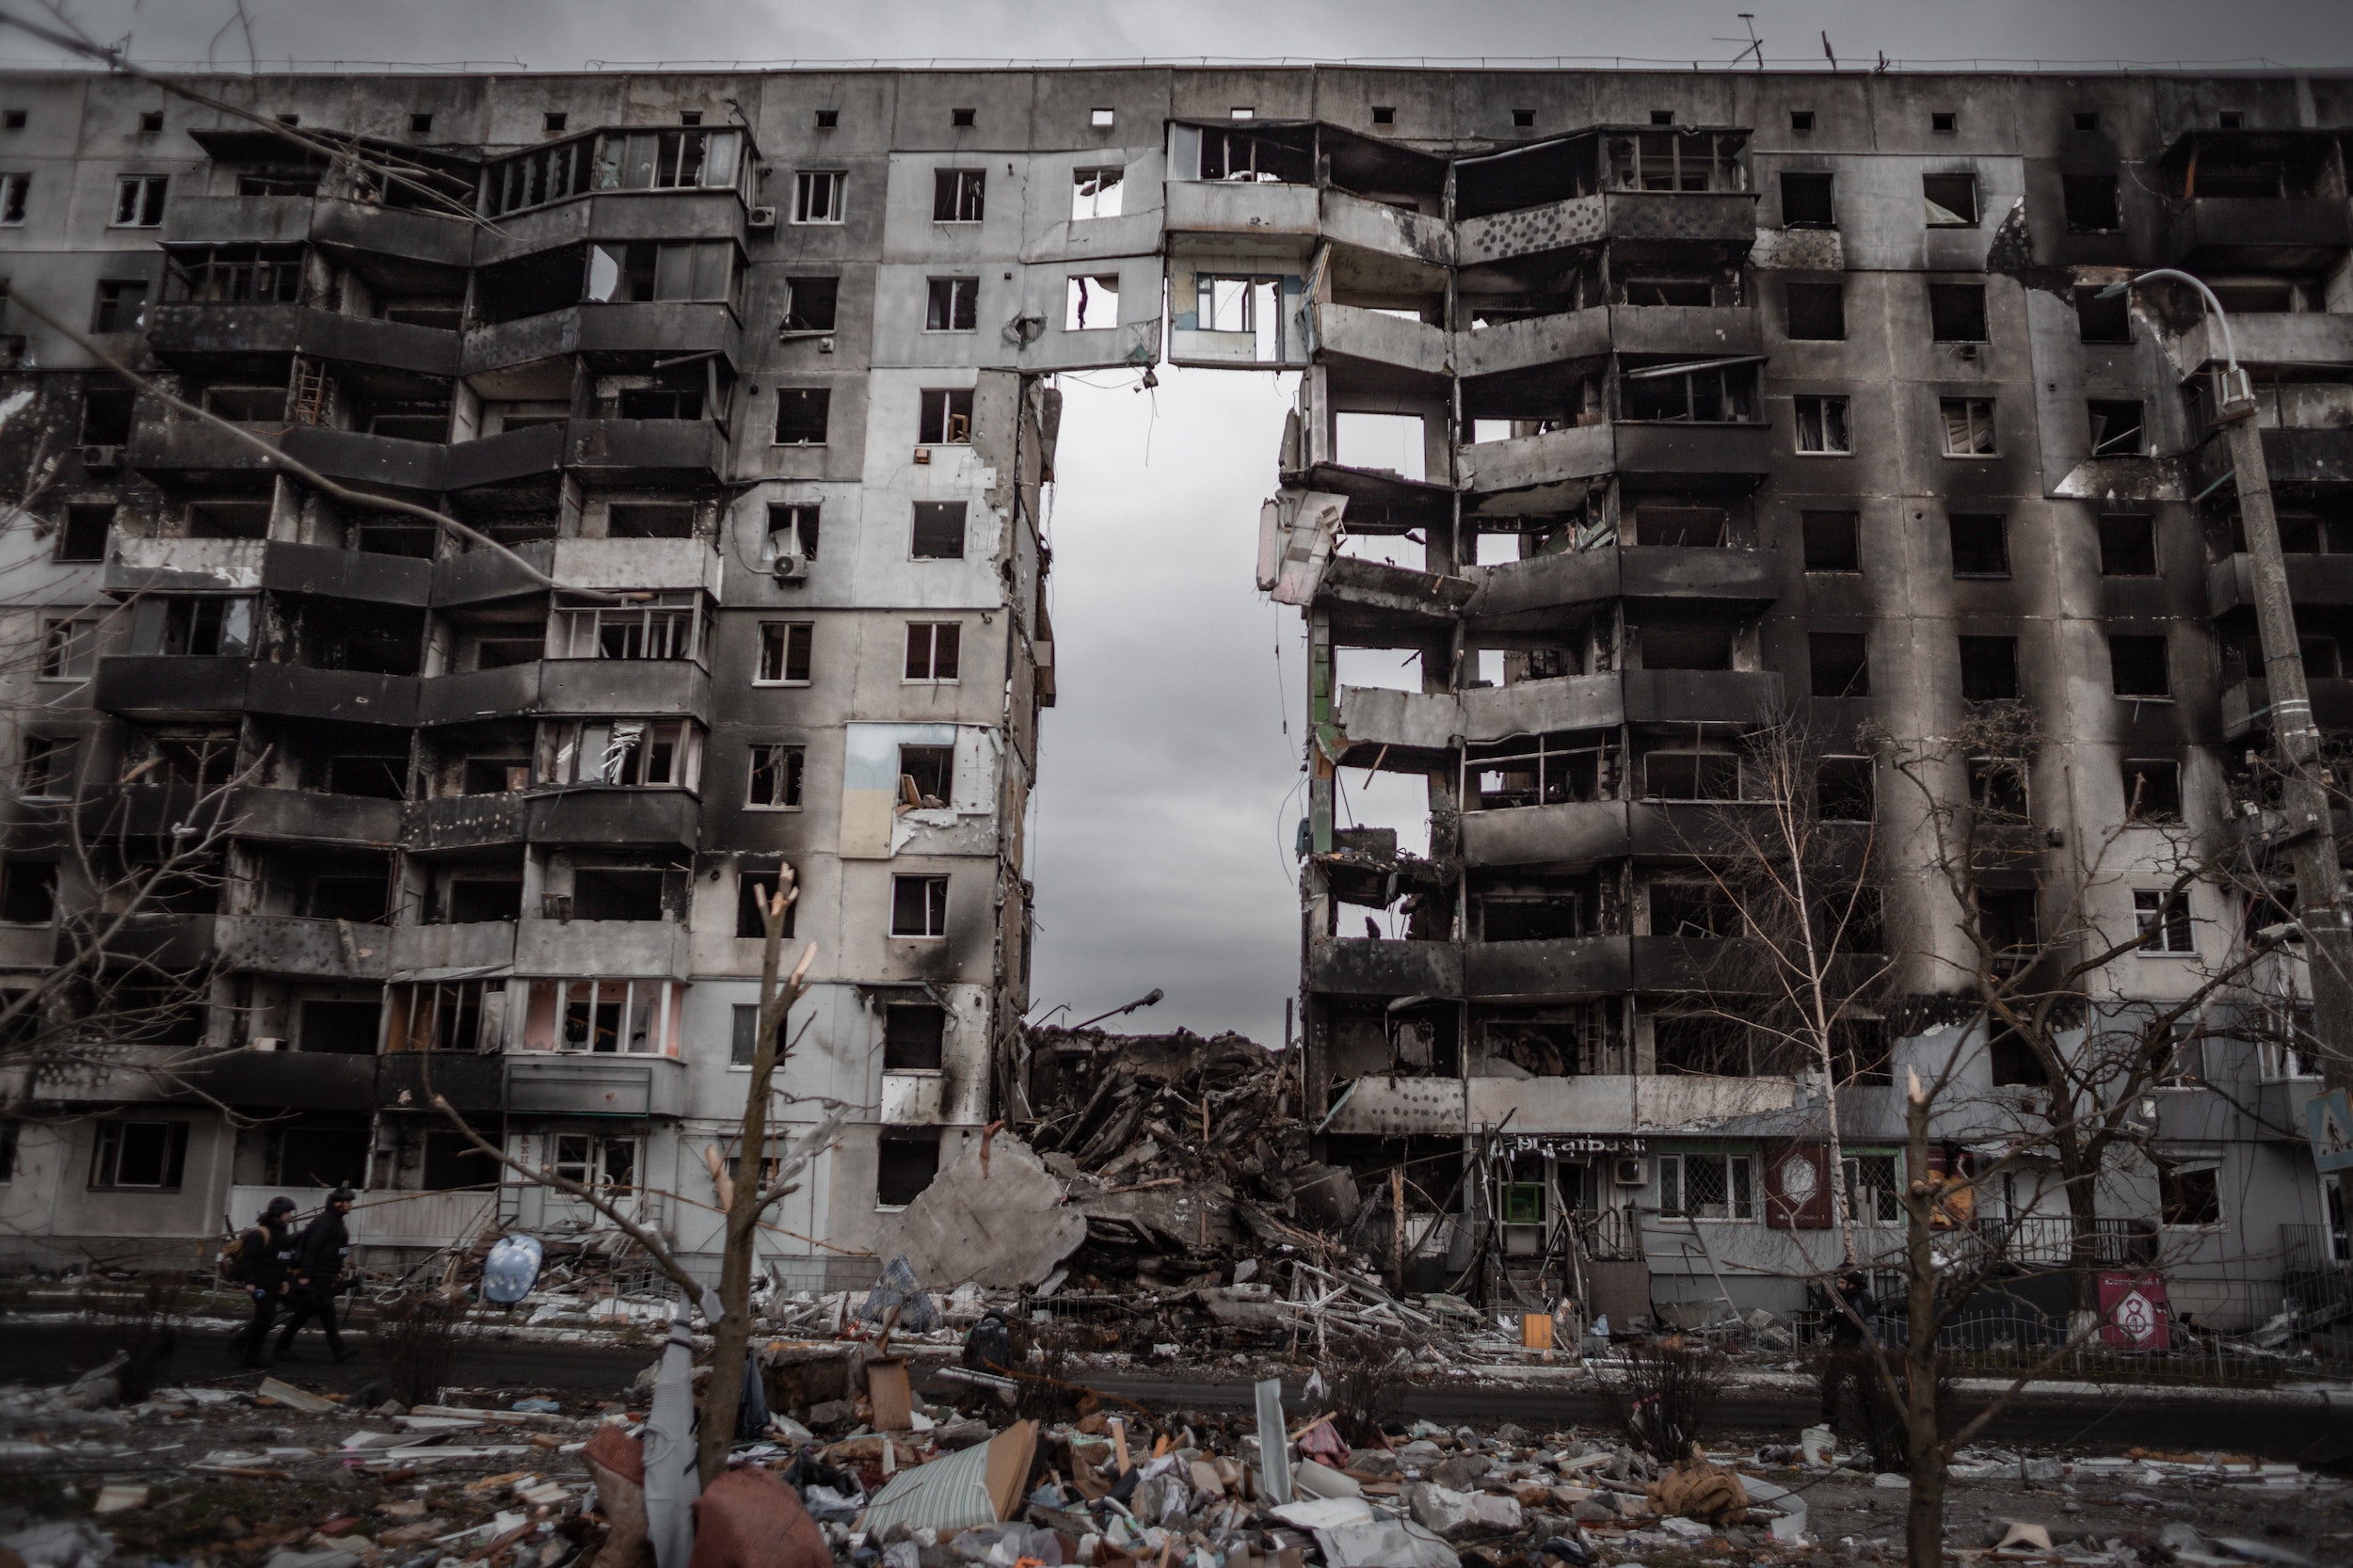 Les défis de la reconstruction post-catastrophe dans un monde instable